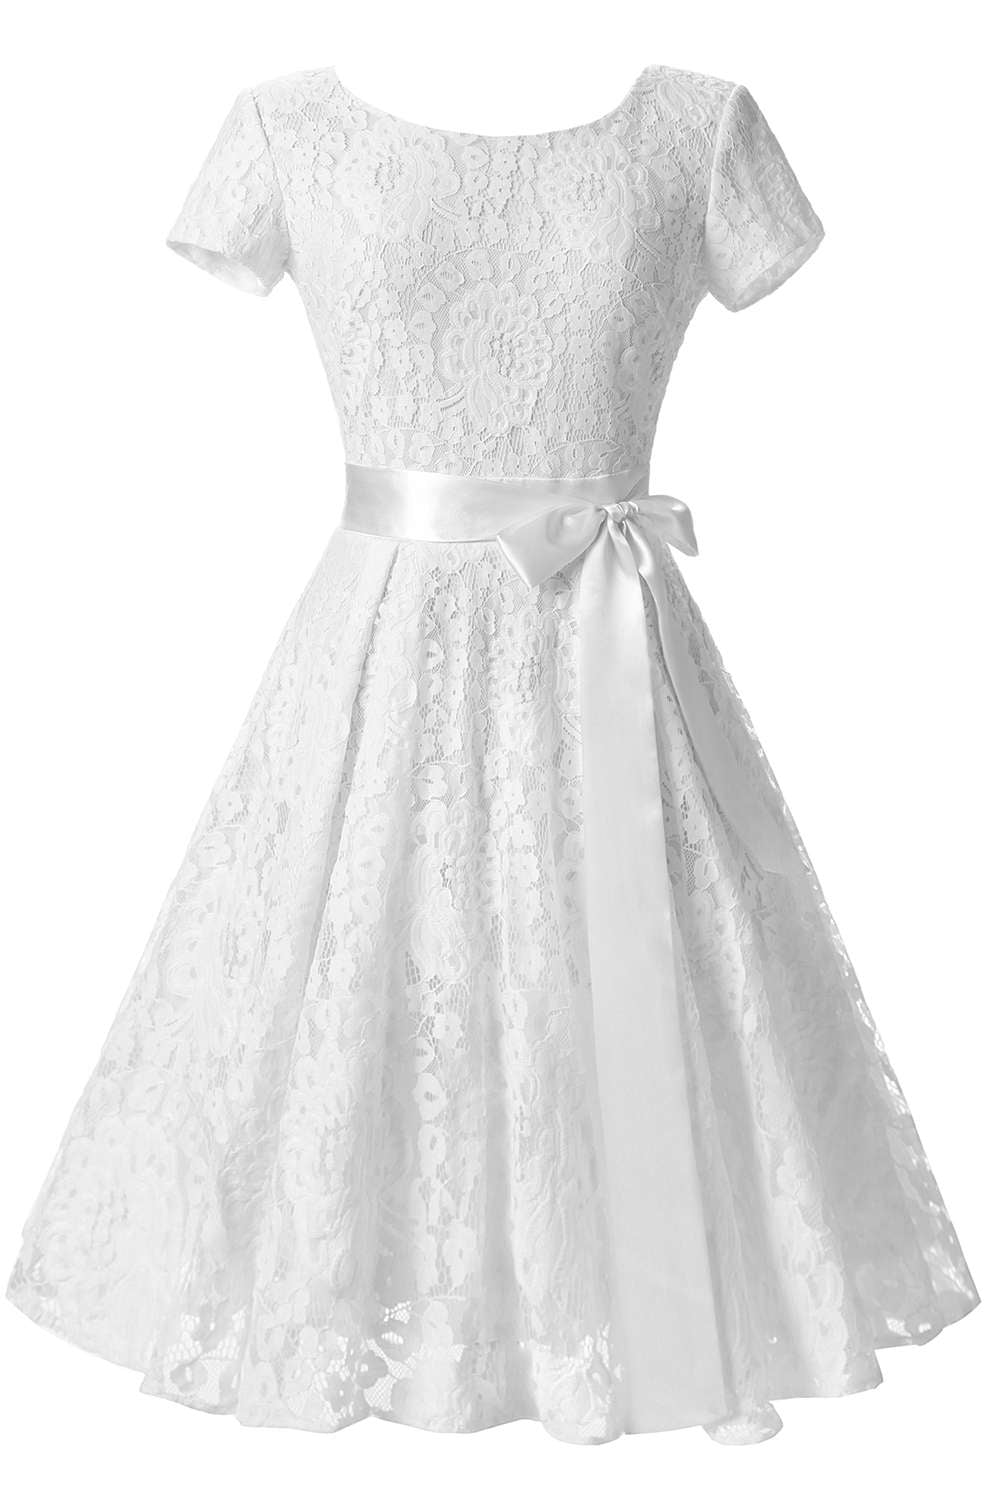 Iyasson Vintage Lace Short Sleeve Mini Dress